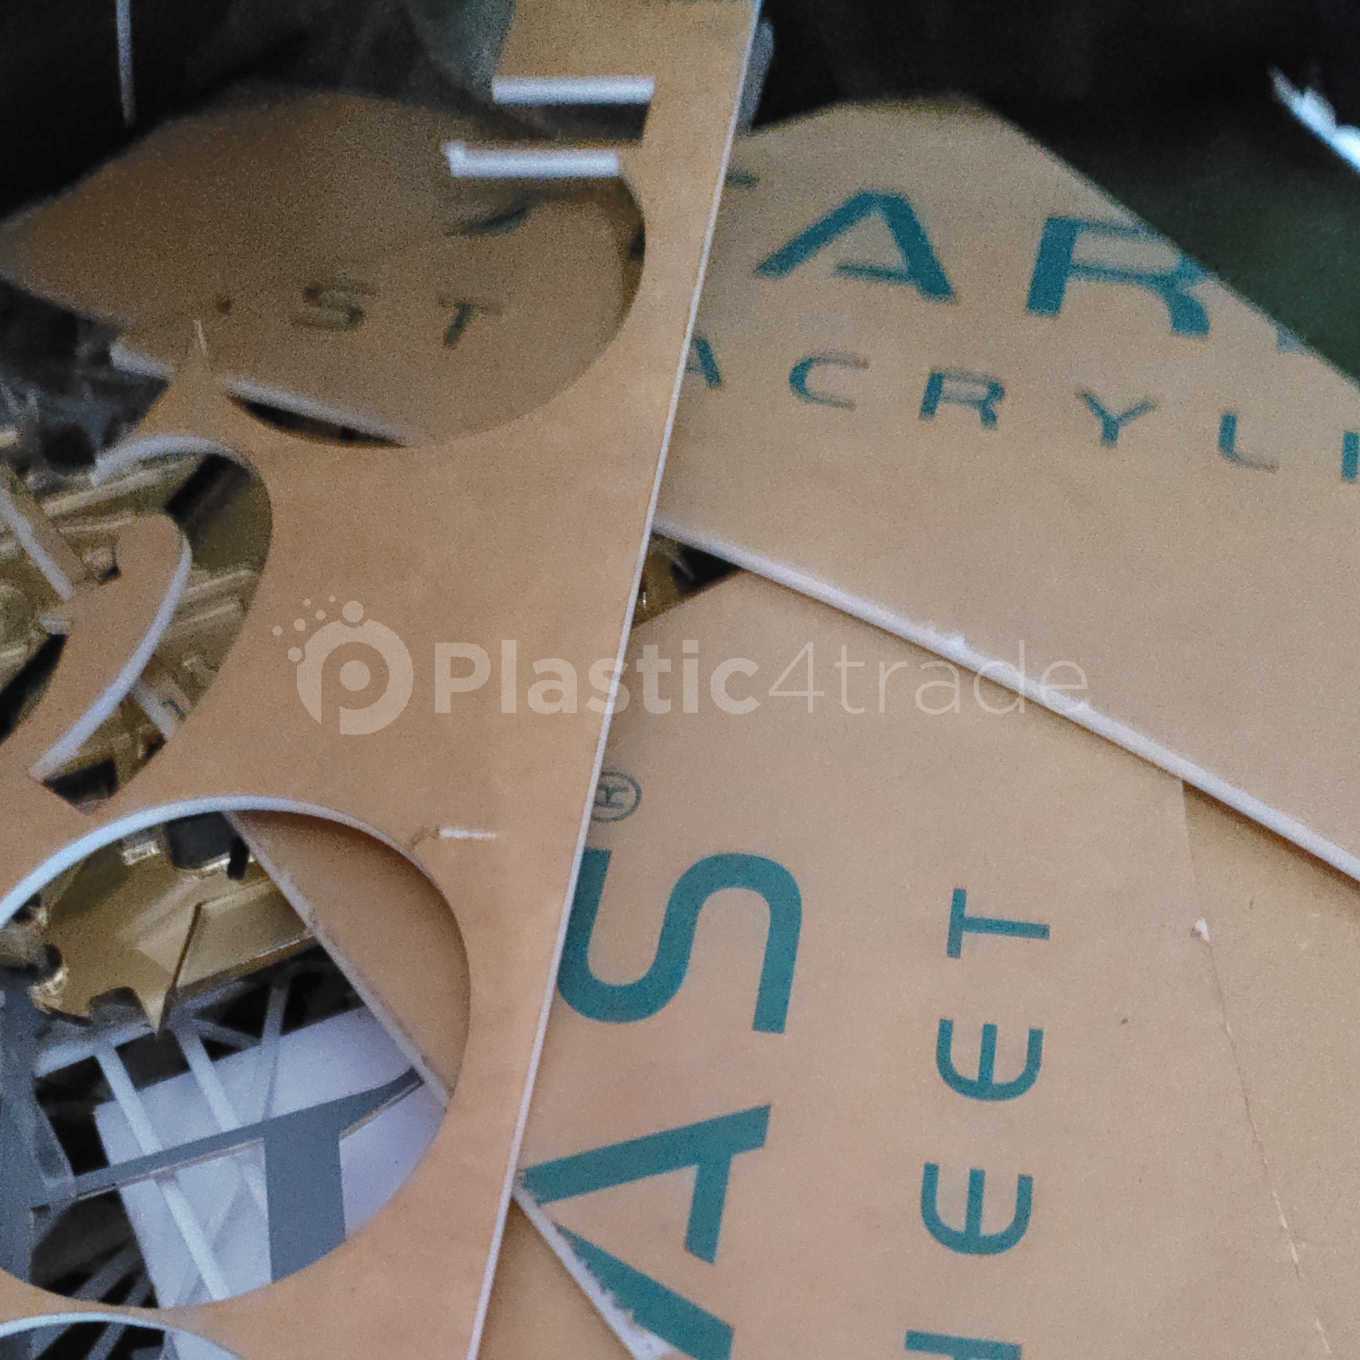 ACRYLIC SCRAP ACRYLIC Scrap Mix Scrap gujarat india Plastic4trade